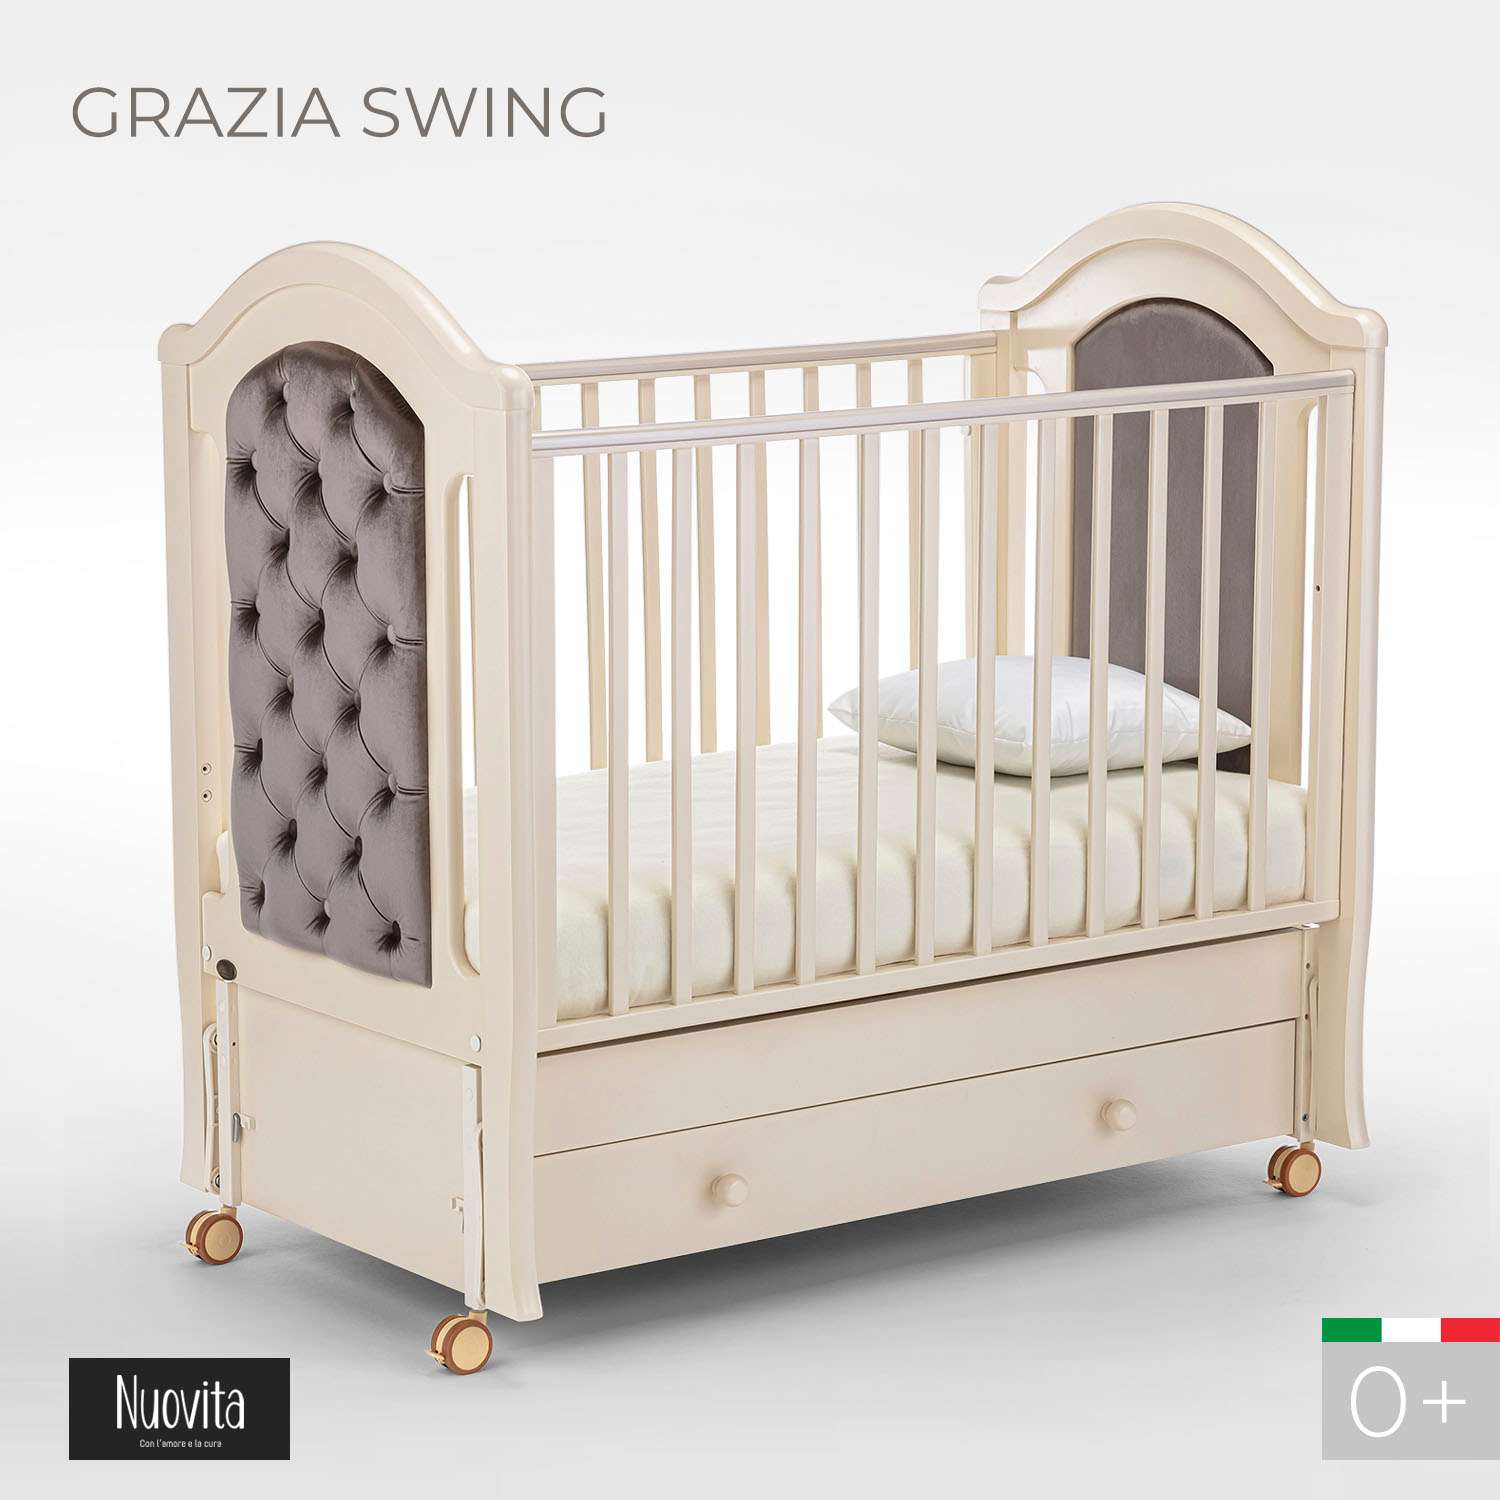 Кровать Nuovita Grazia swing продольный Слоновая кость - фото 2